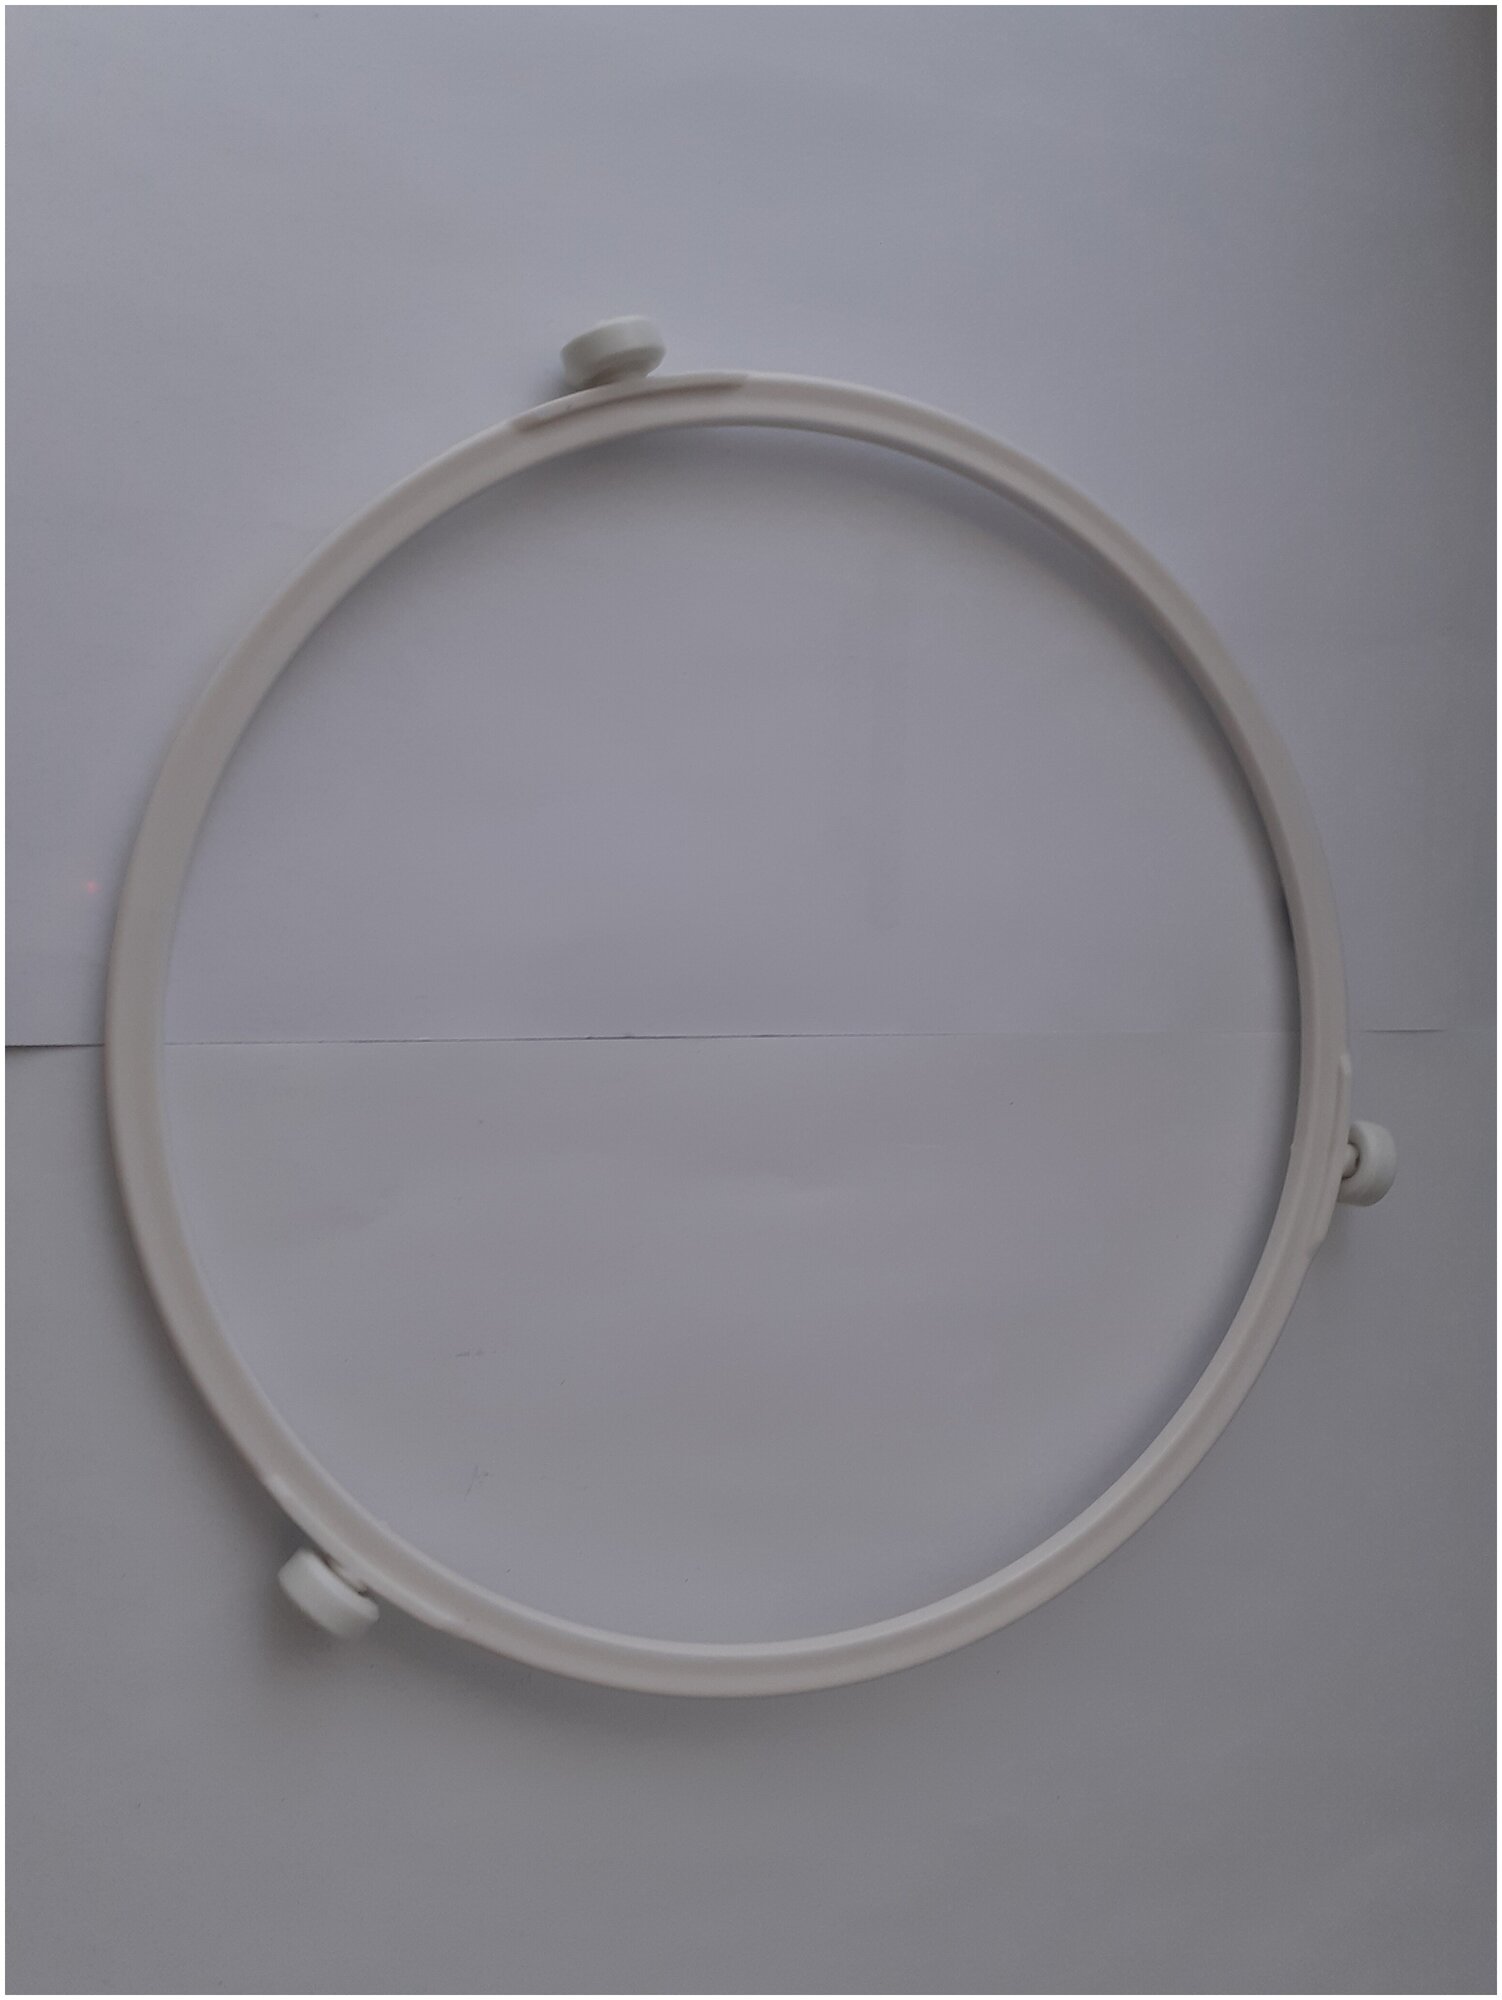 Кольцо вращения тарелки для СВЧ-печи, диаметр кольца 190 мм, диаметр ролика 12 мм